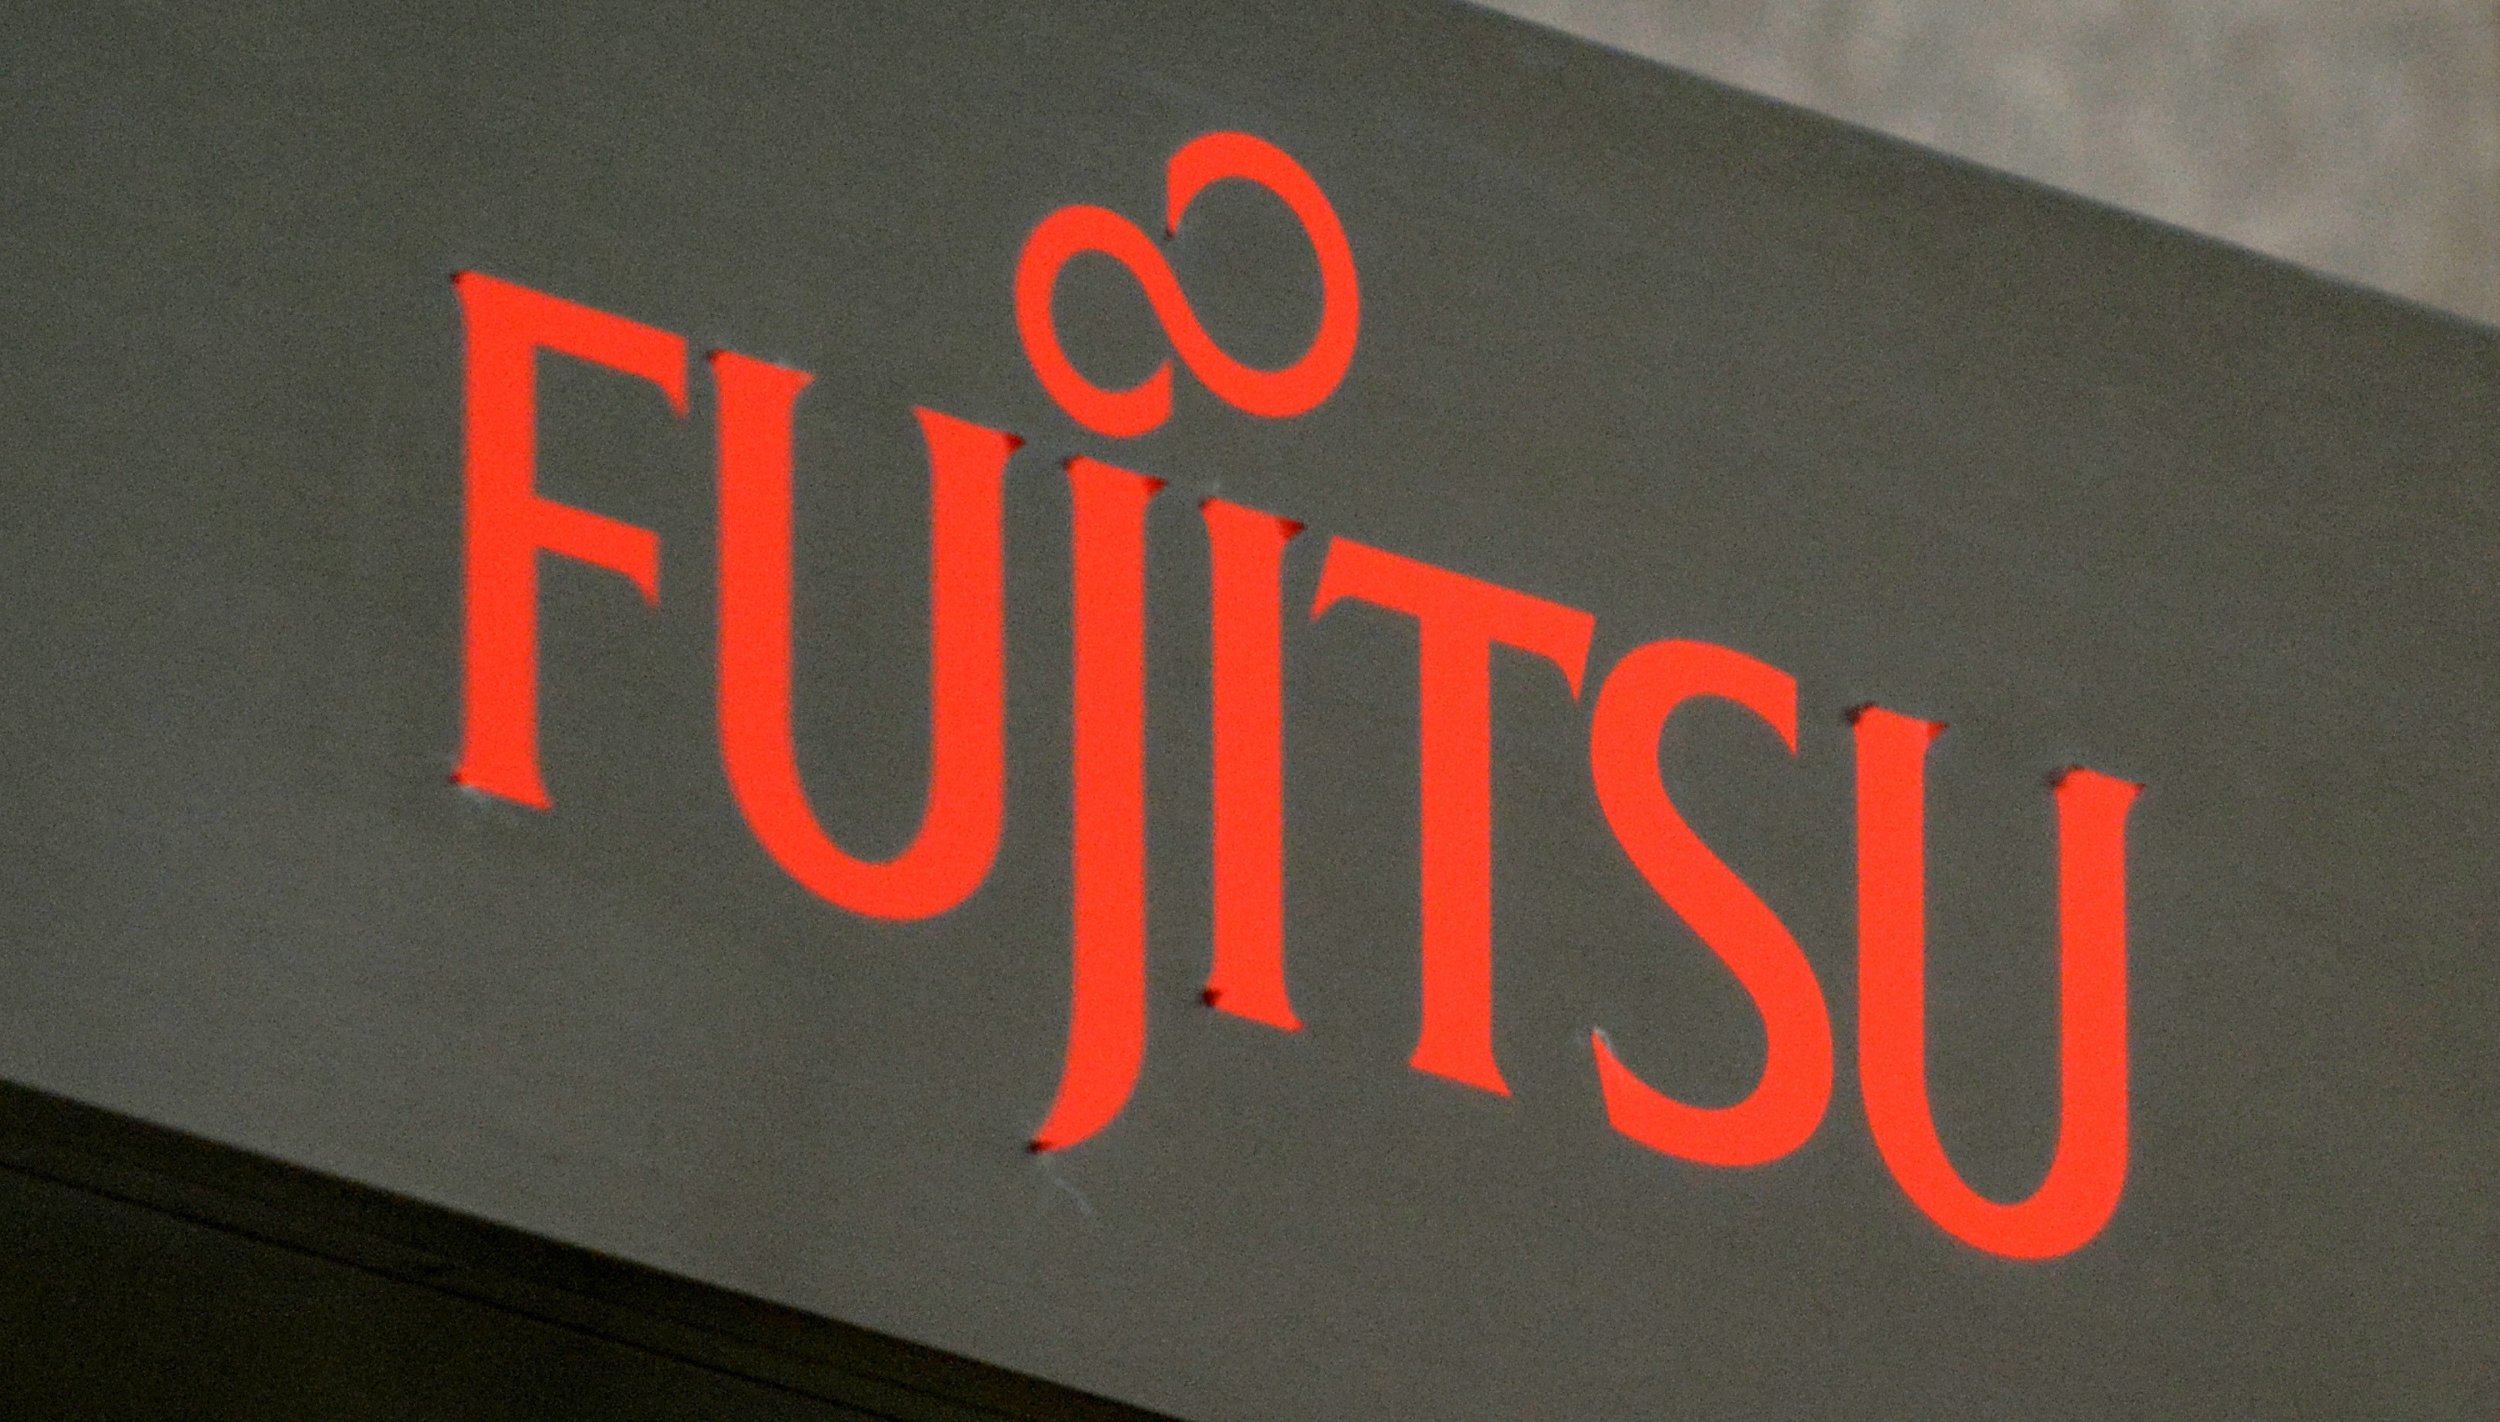 Fujitsu Examining Blockchain's Banking Potential With 9 Japanese Banks